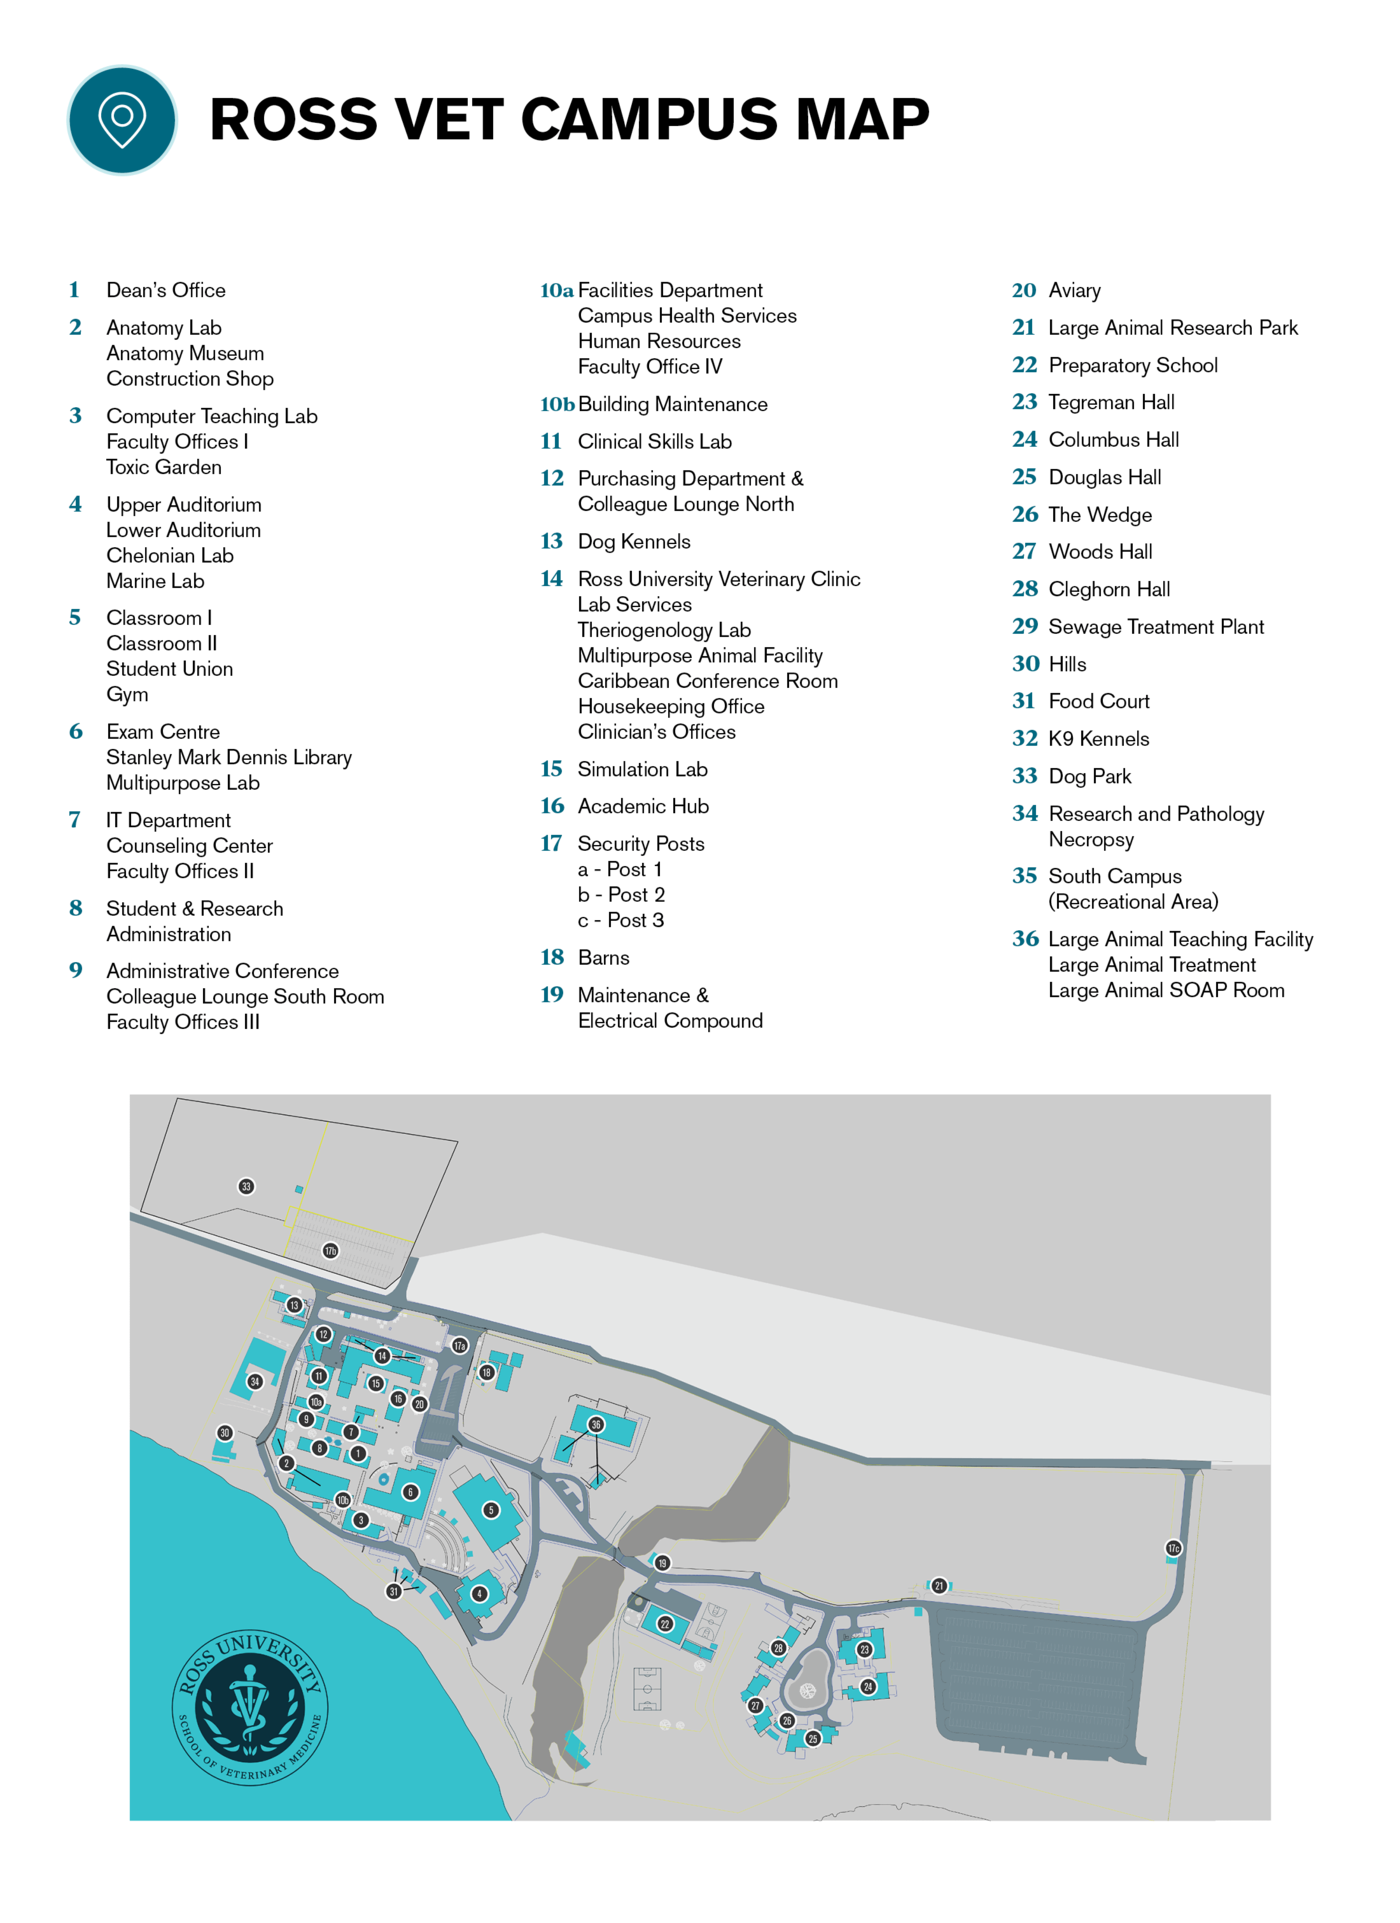 RUSVM - Campus Maps information - update